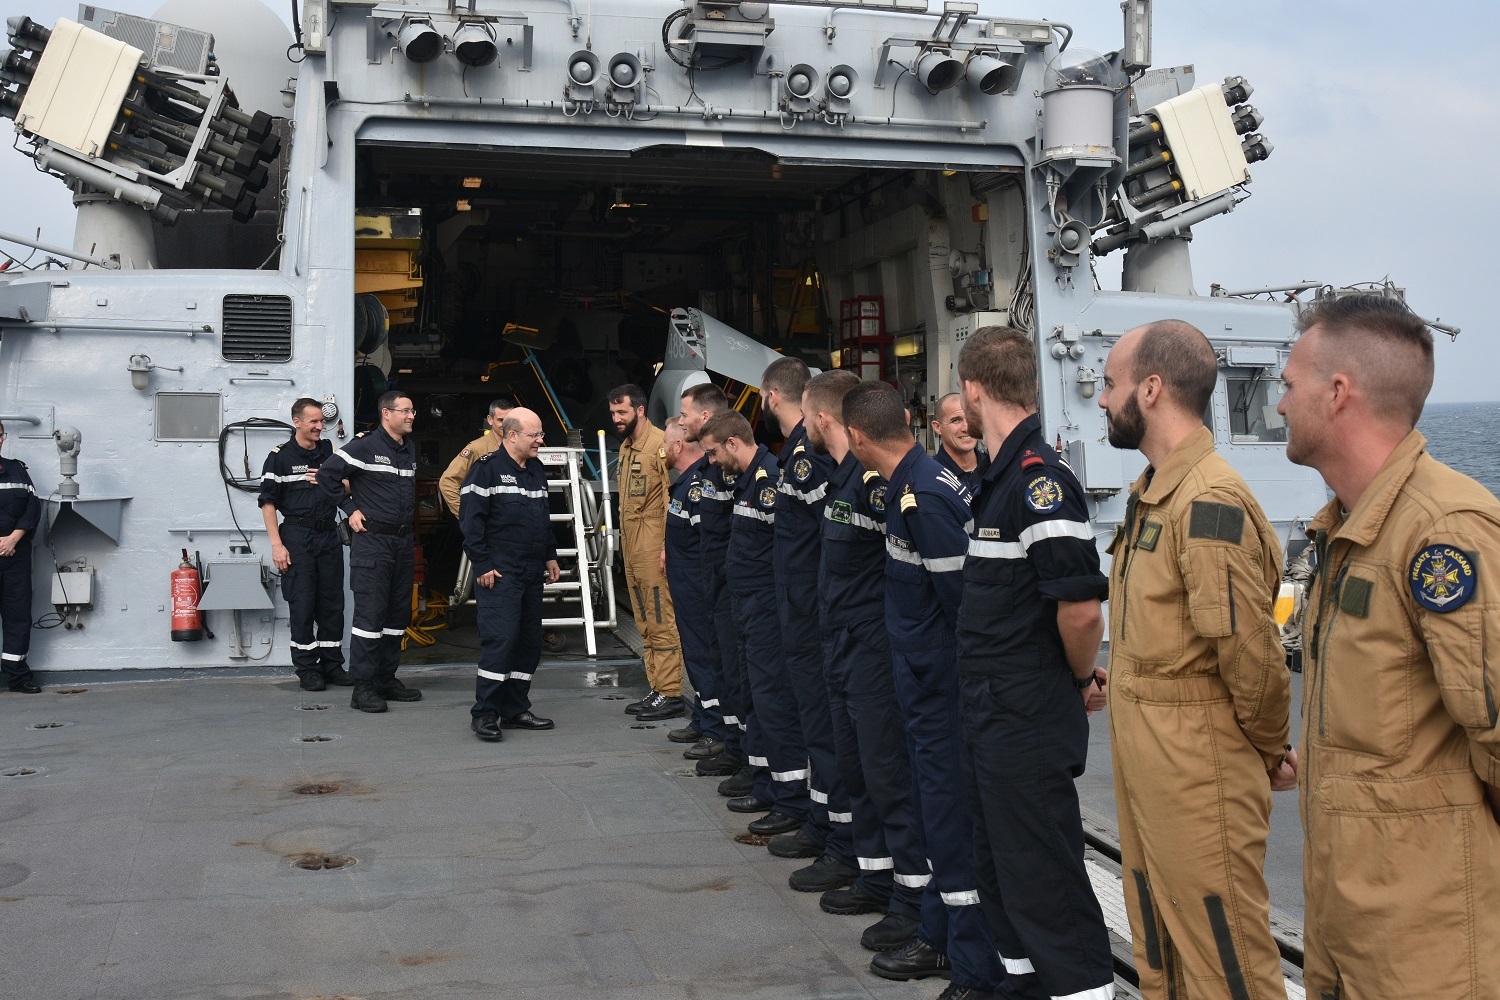 Le chef d’état-major de la marine accueilli à bord de la frégate Cassard